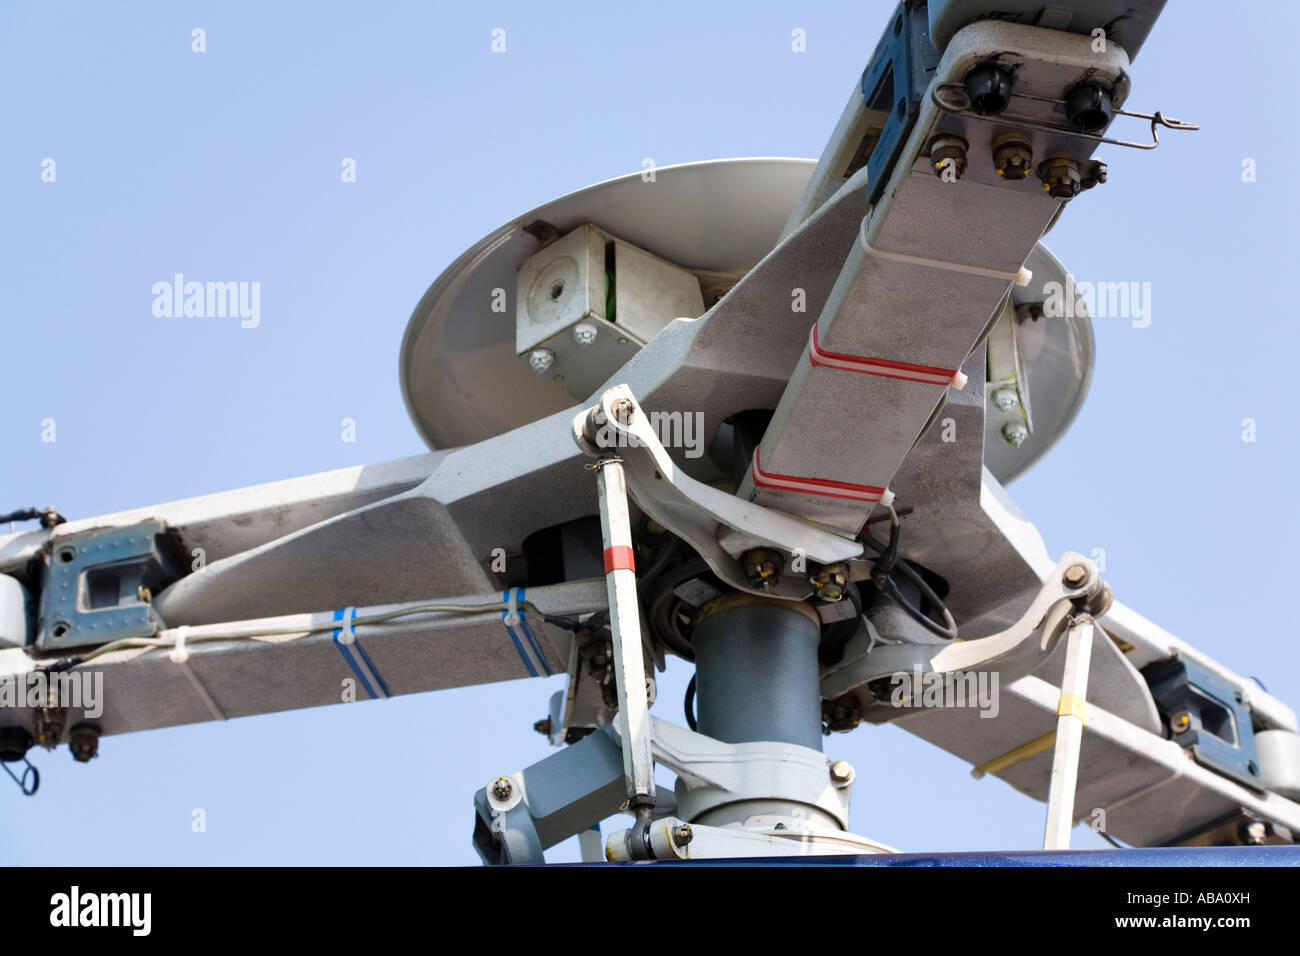 L'hélicoptère Jet Ranger, détail du rotor. Pièces de l'aviation. Banque D'Images